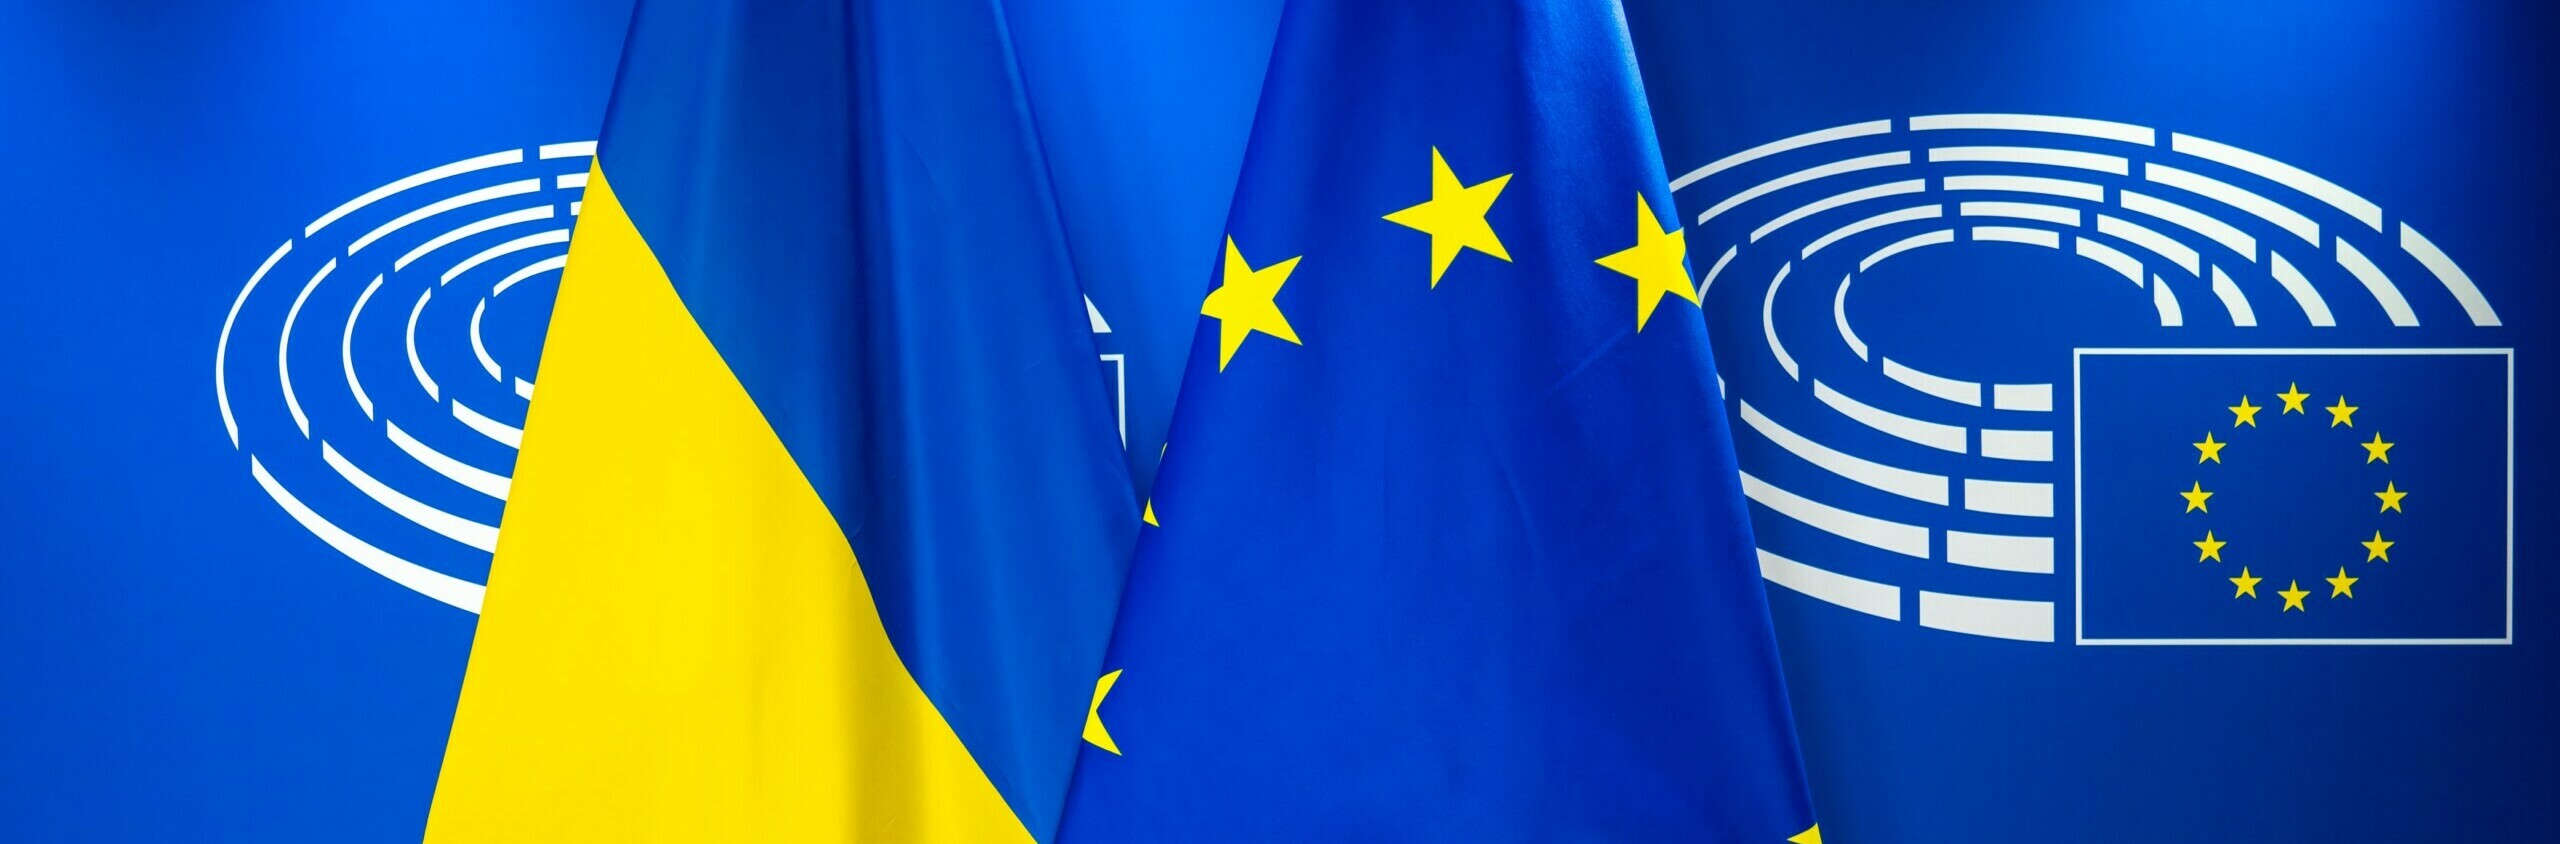 EP-127136A_flags-EU-Ukraine